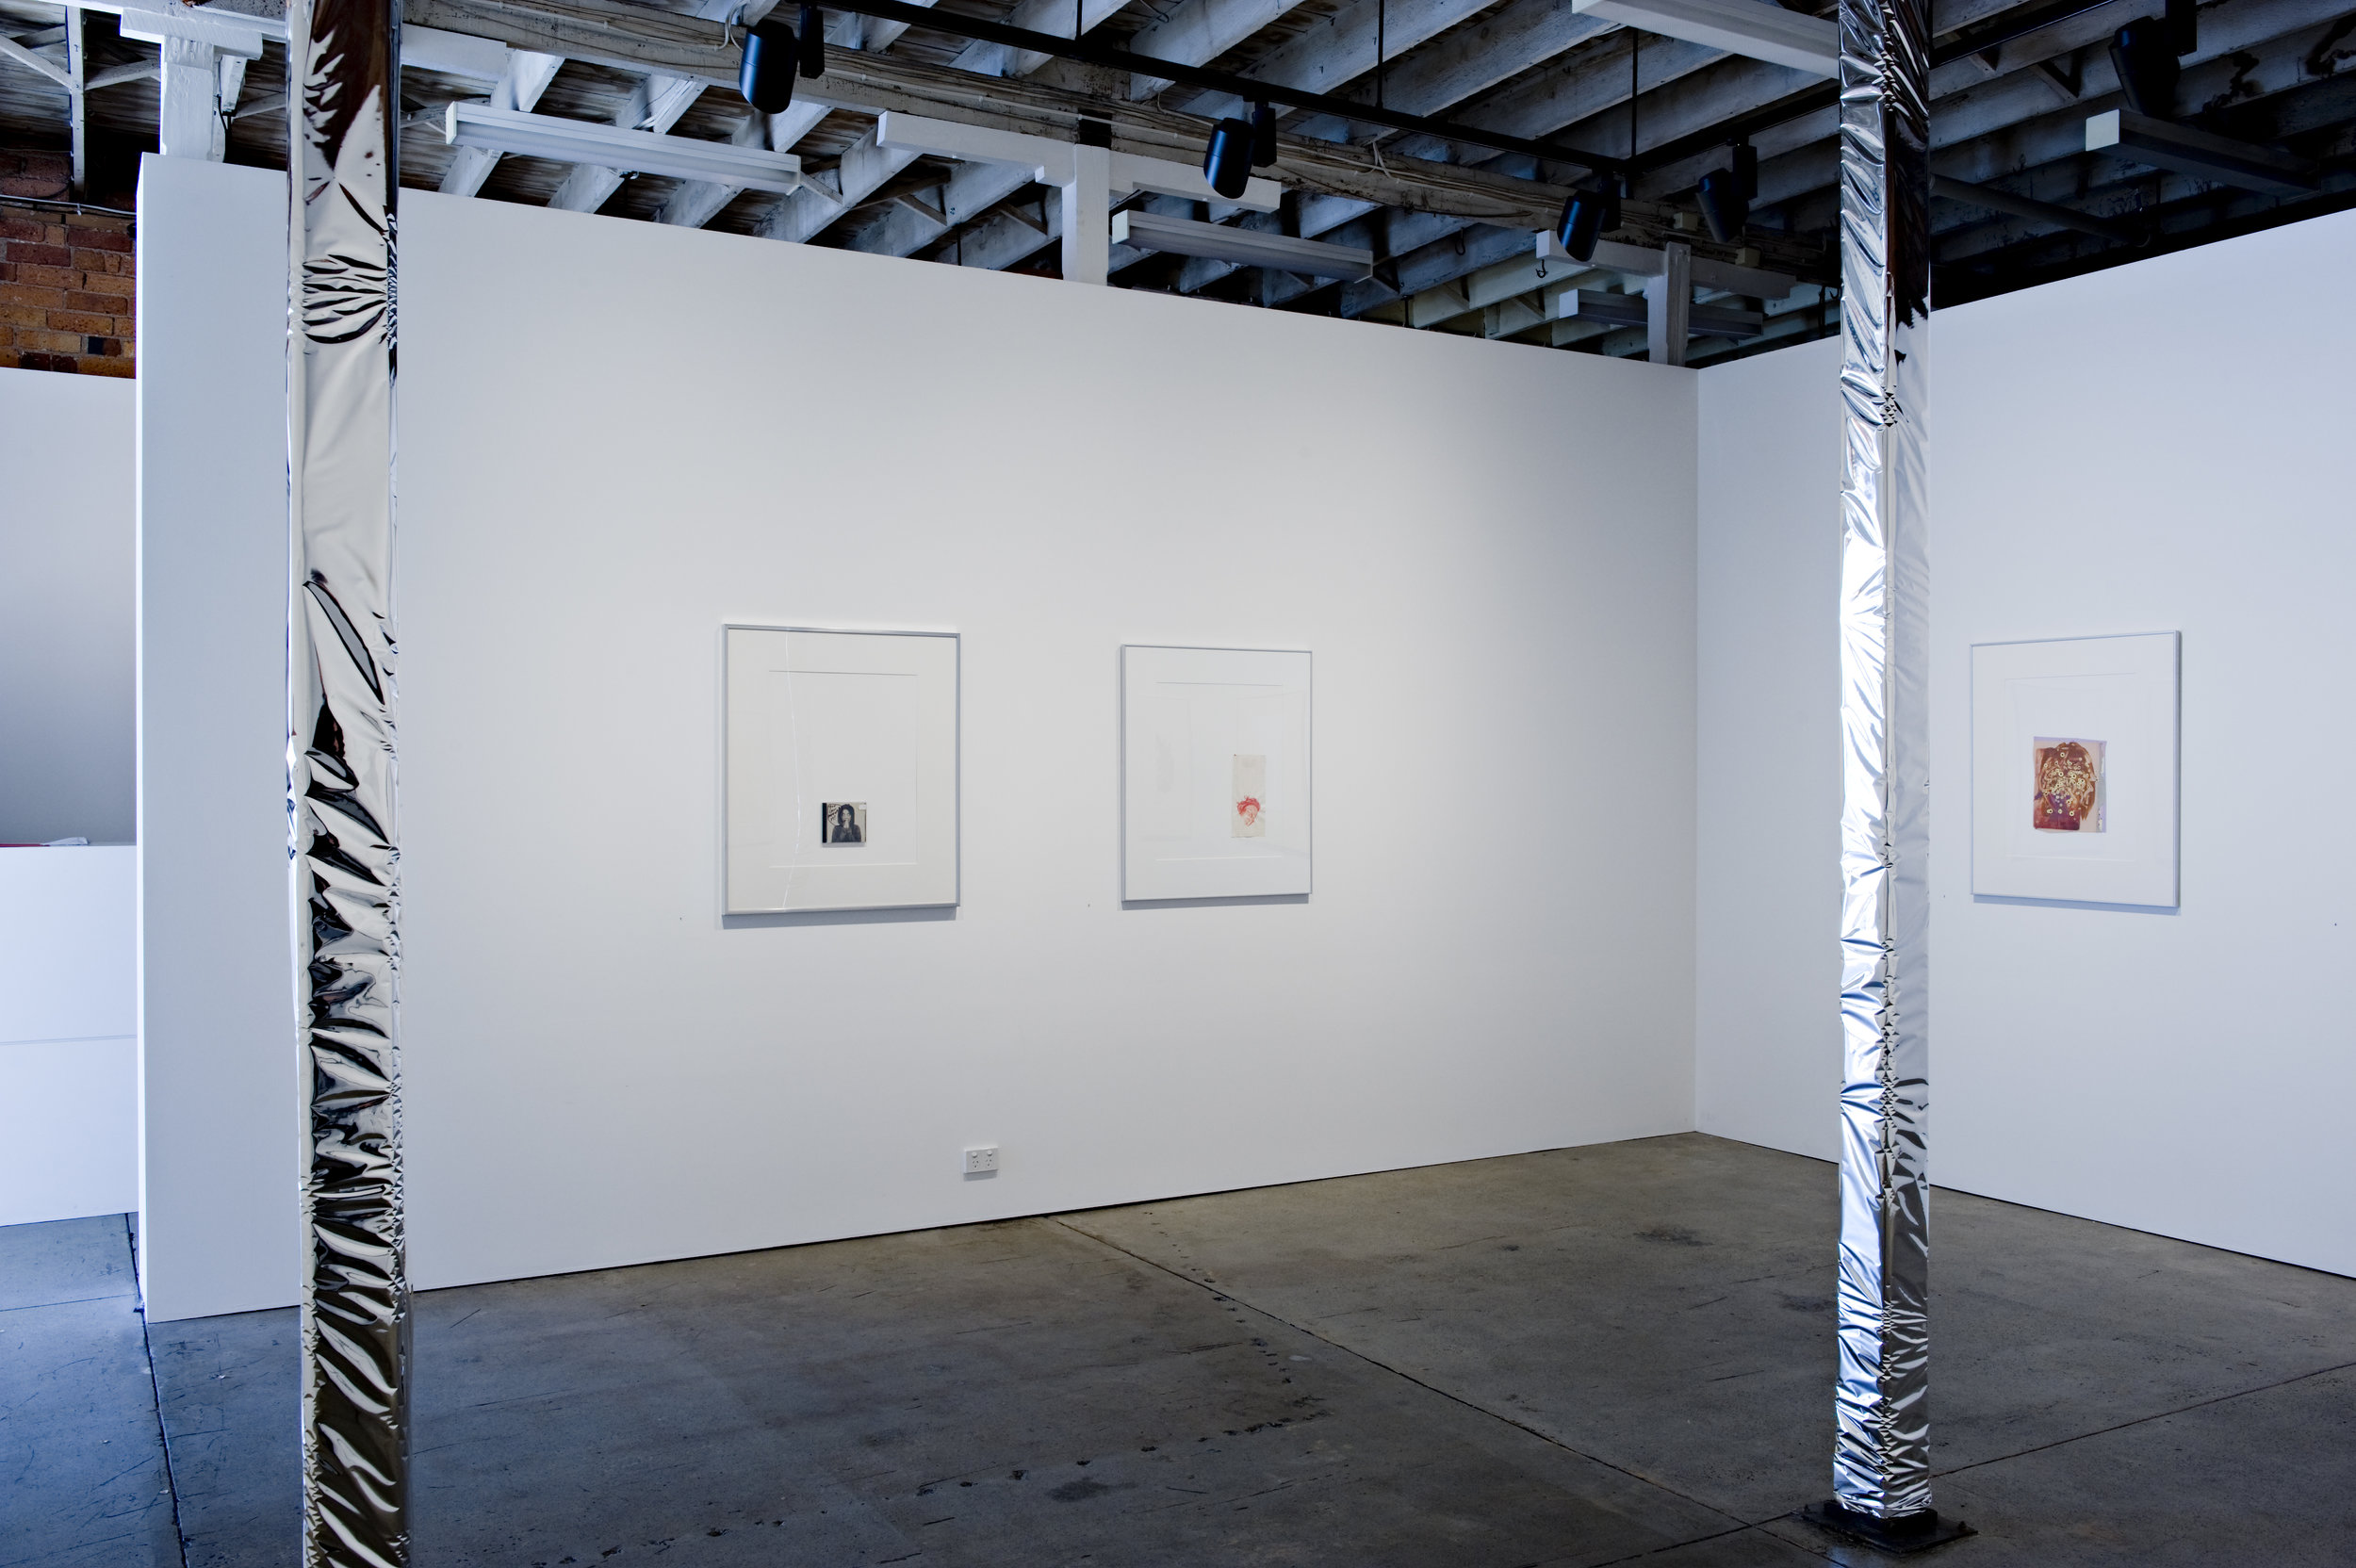  Geoff Newton, Works on Paper, 2009, installation image 